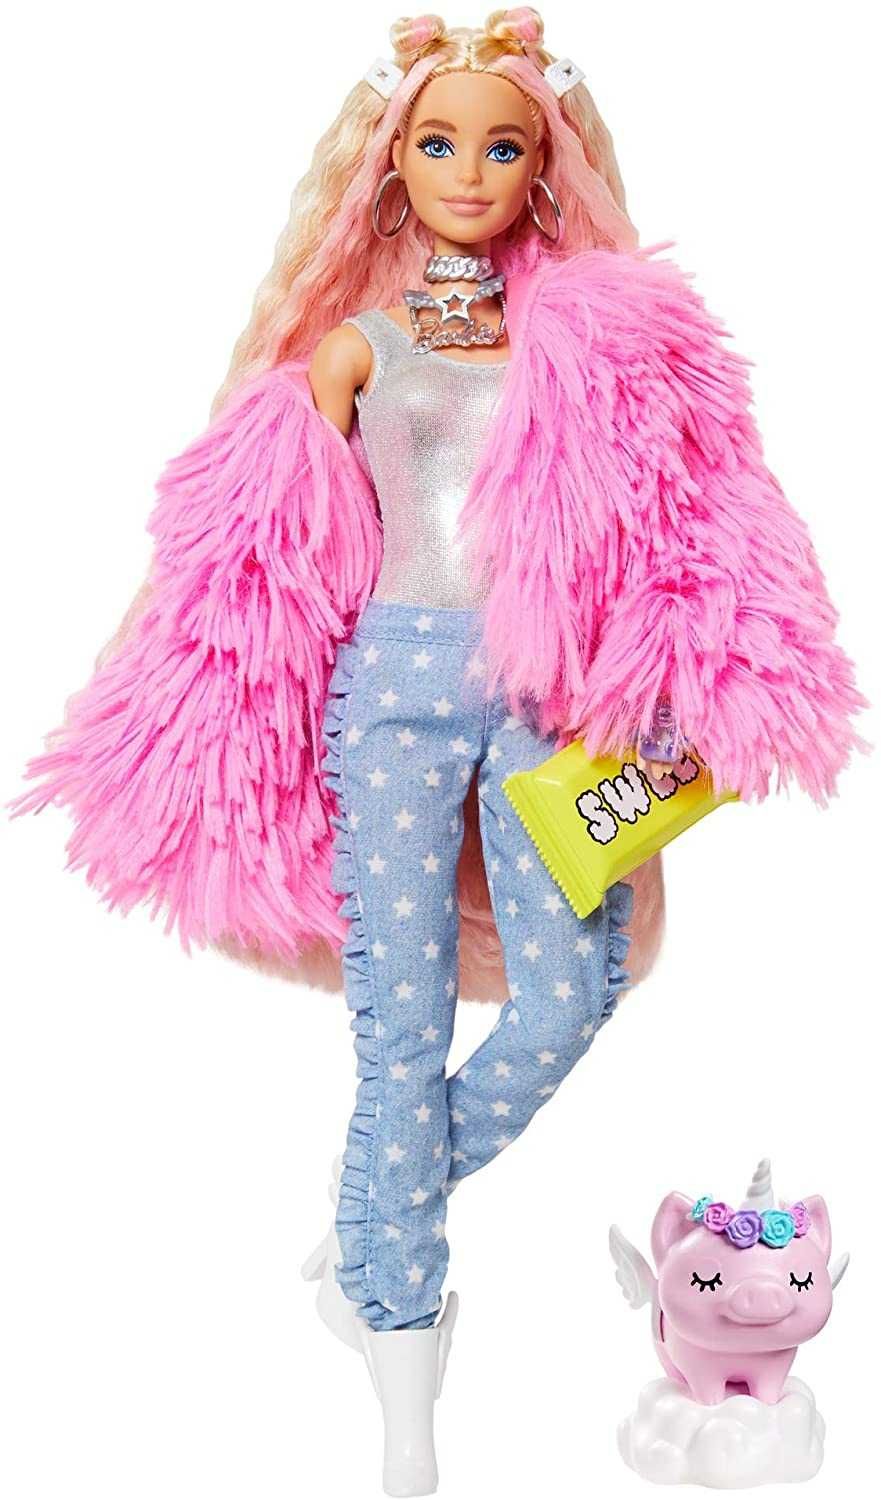 ОРИГИНАЛ! Кукла Барби Экстра блондинка Barbie Extra в розовой шубе